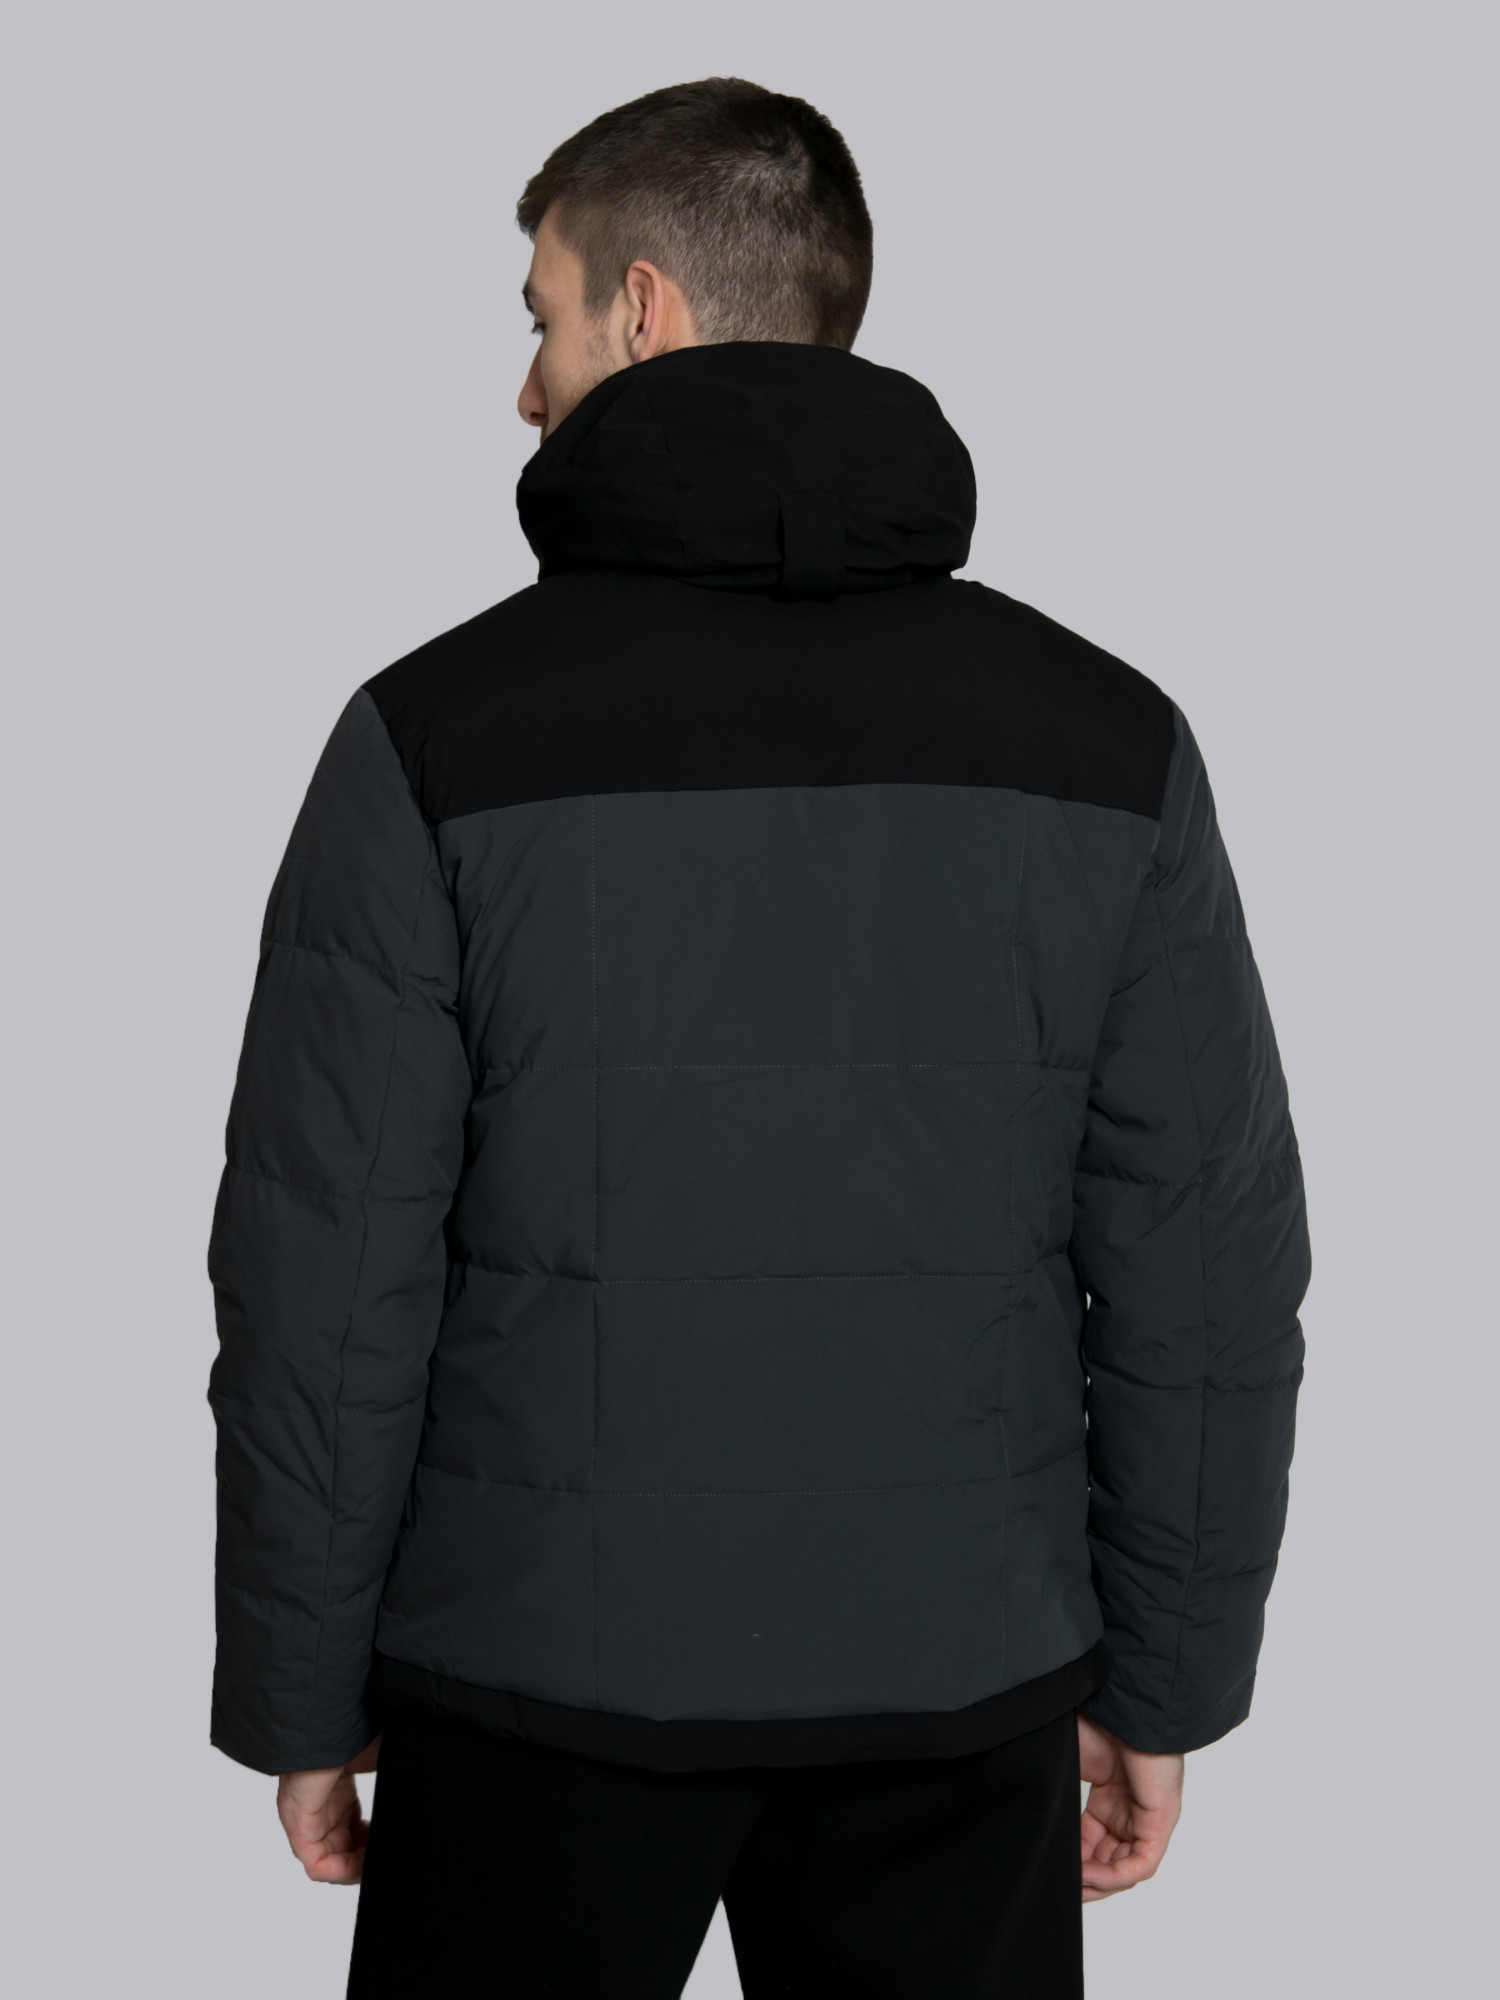 Куртка мужская Evoids Alphard темно-серая 711333-020 изображение 5